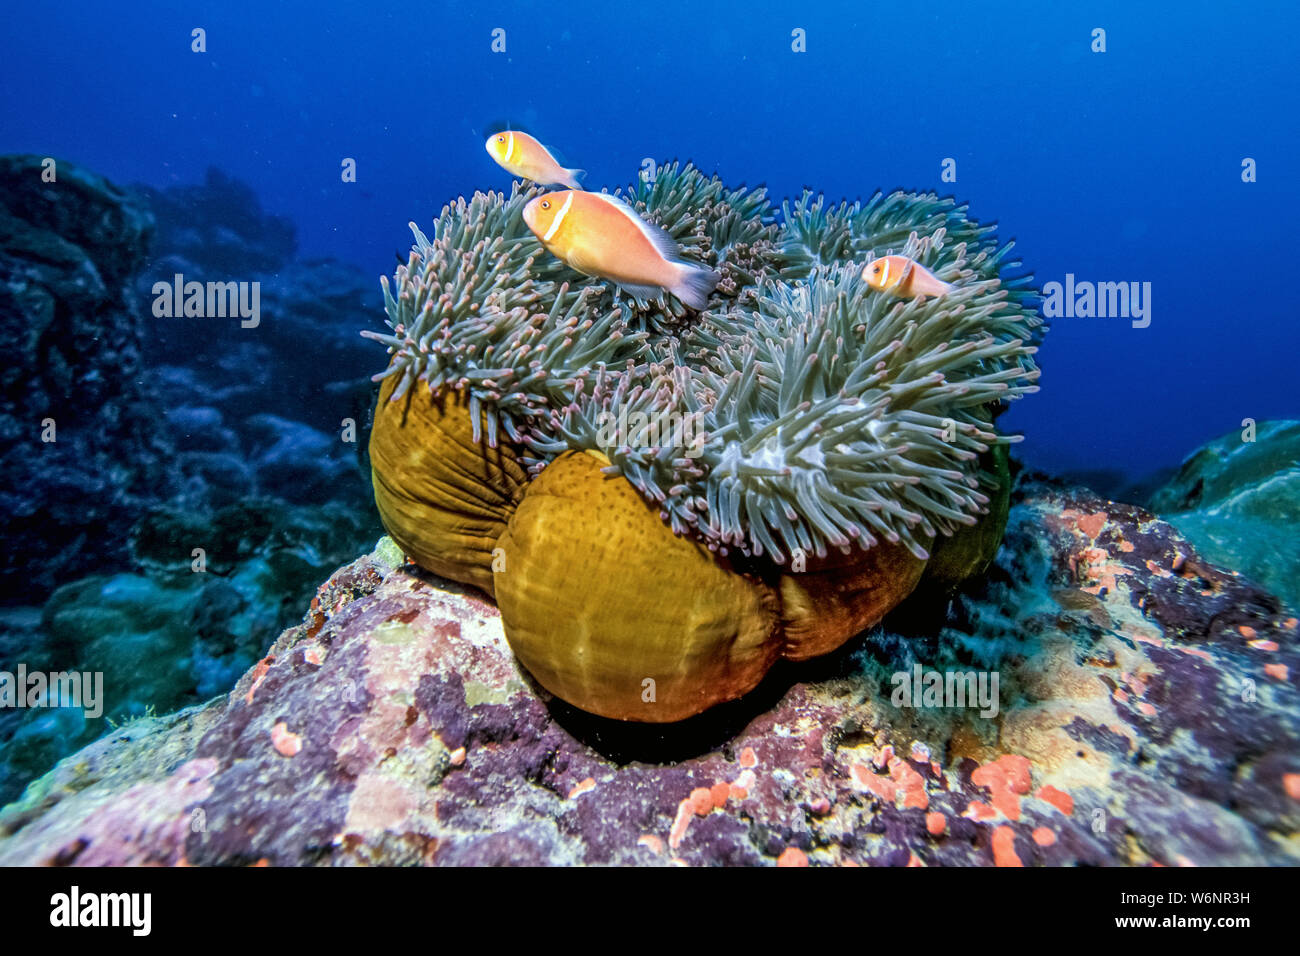 L'île de Yap - Micronésie Anemone et poisson clown Banque D'Images